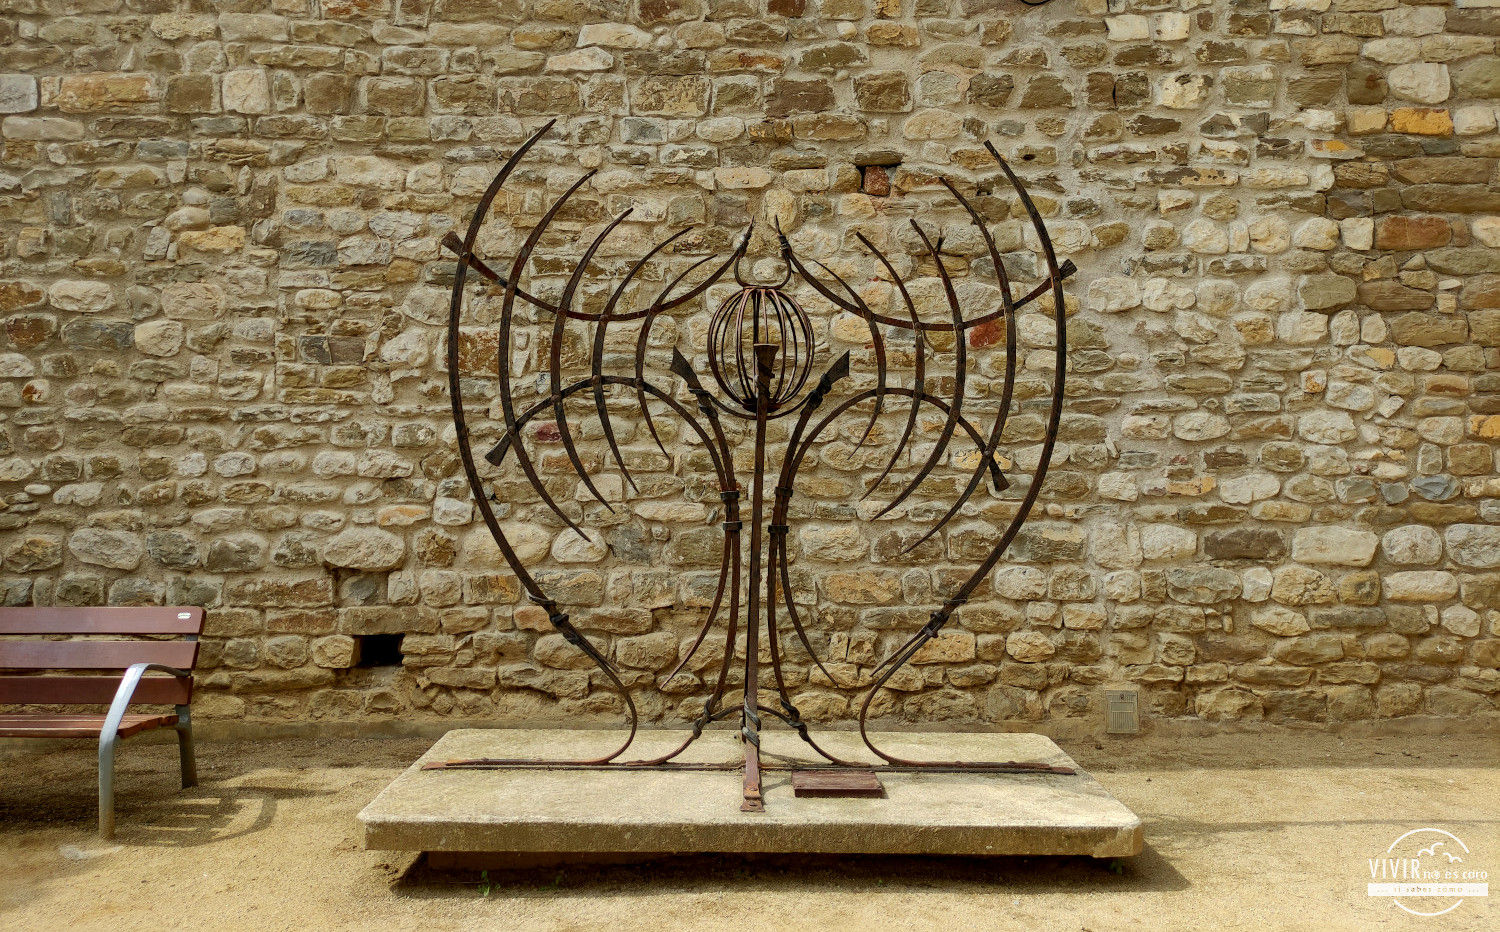 Escultura en forja en Besalú (Gerona)